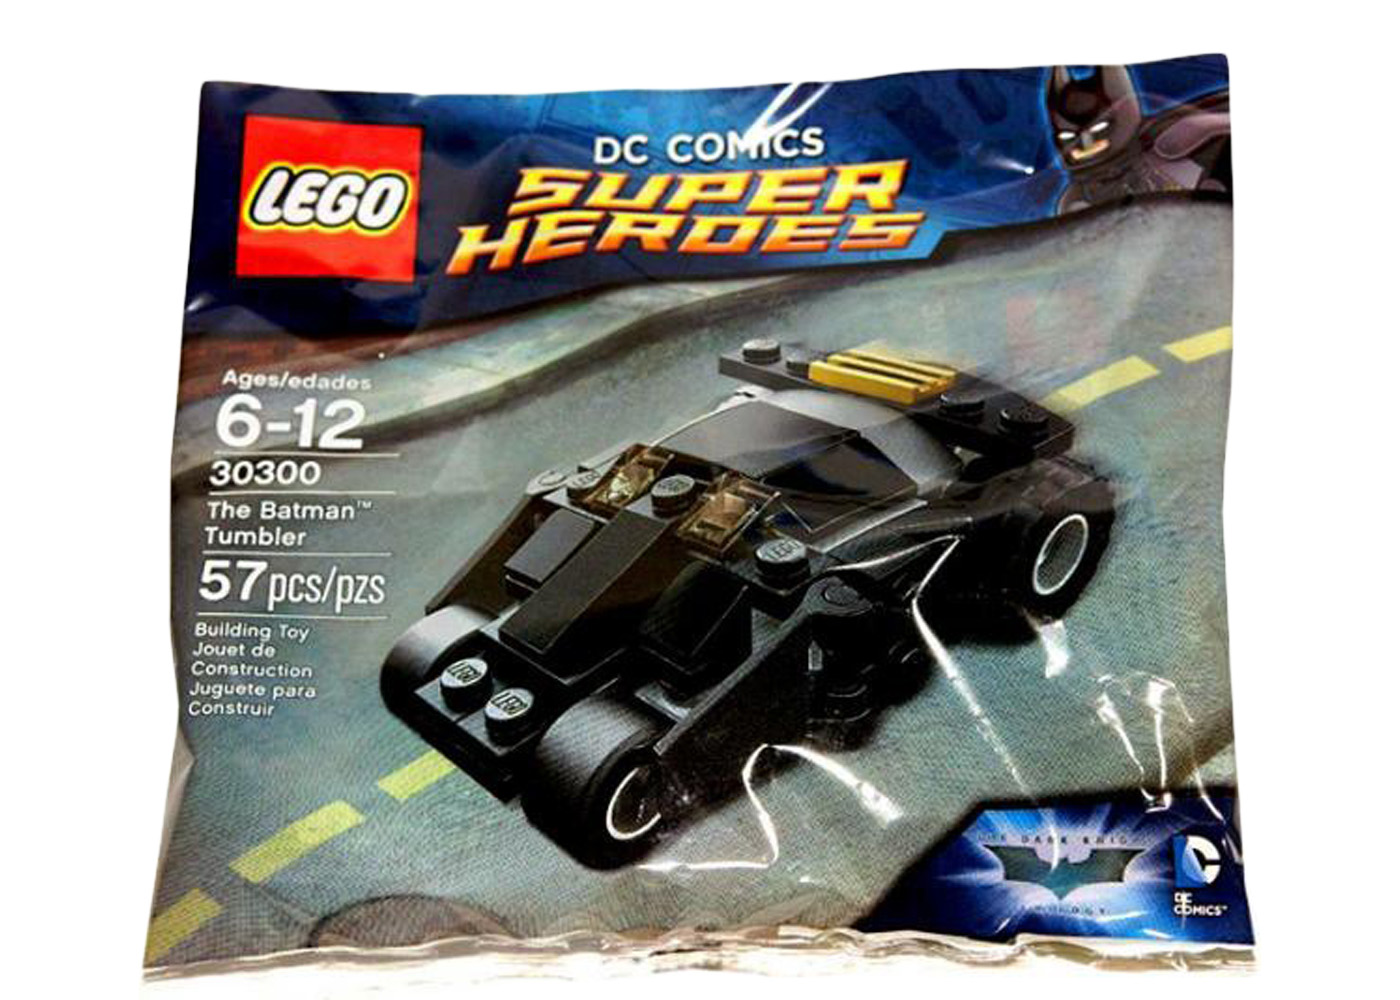 Lego 30300 DC Comics Super Heroes The Batman Tumbler Instructions Only 